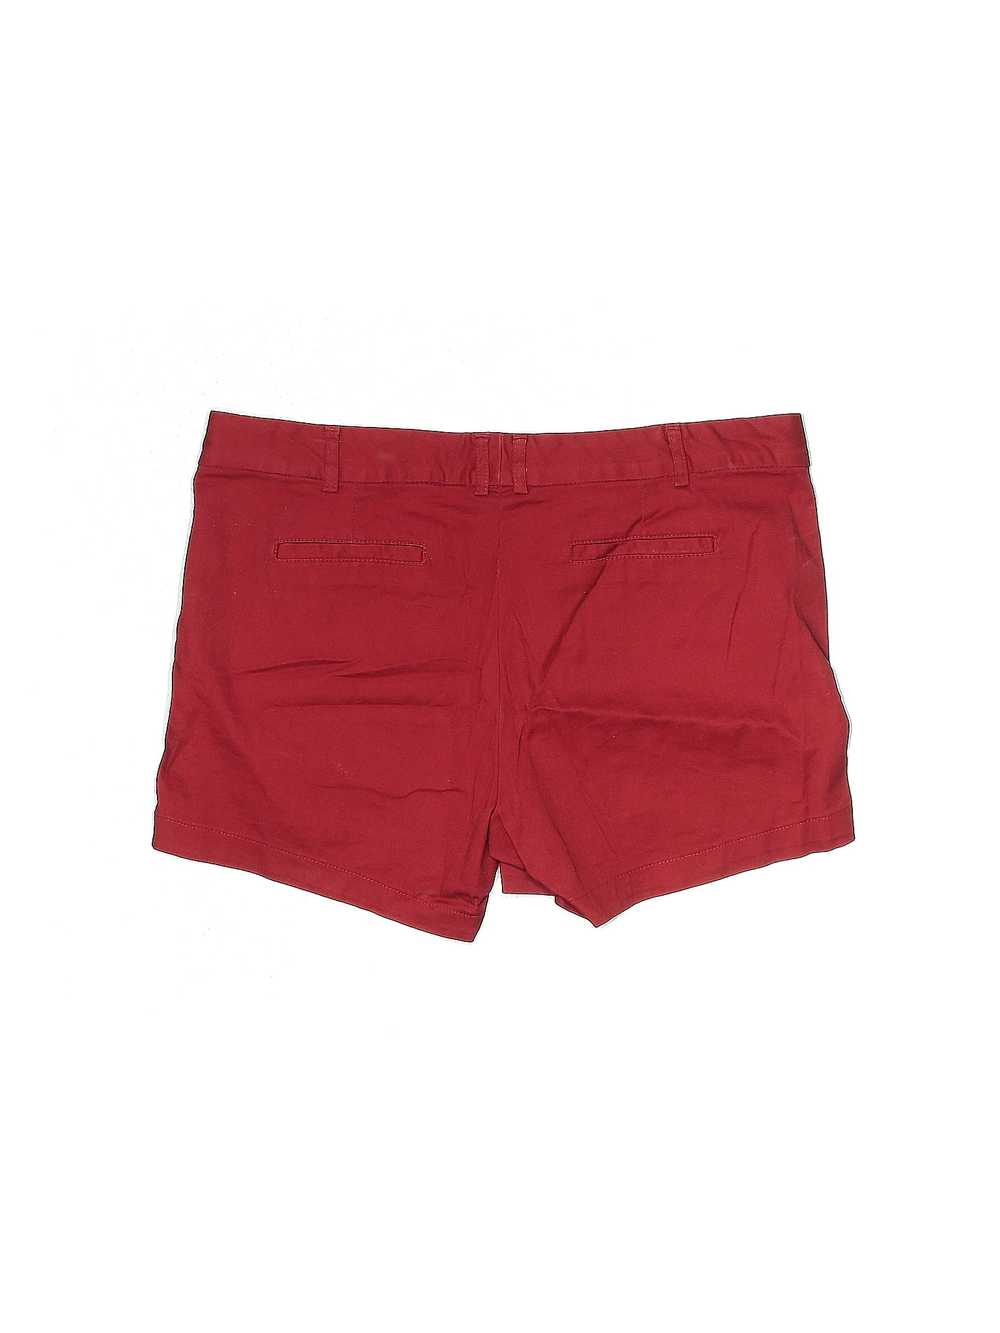 Land' n Sea Women Red Khaki Shorts 12 - image 2